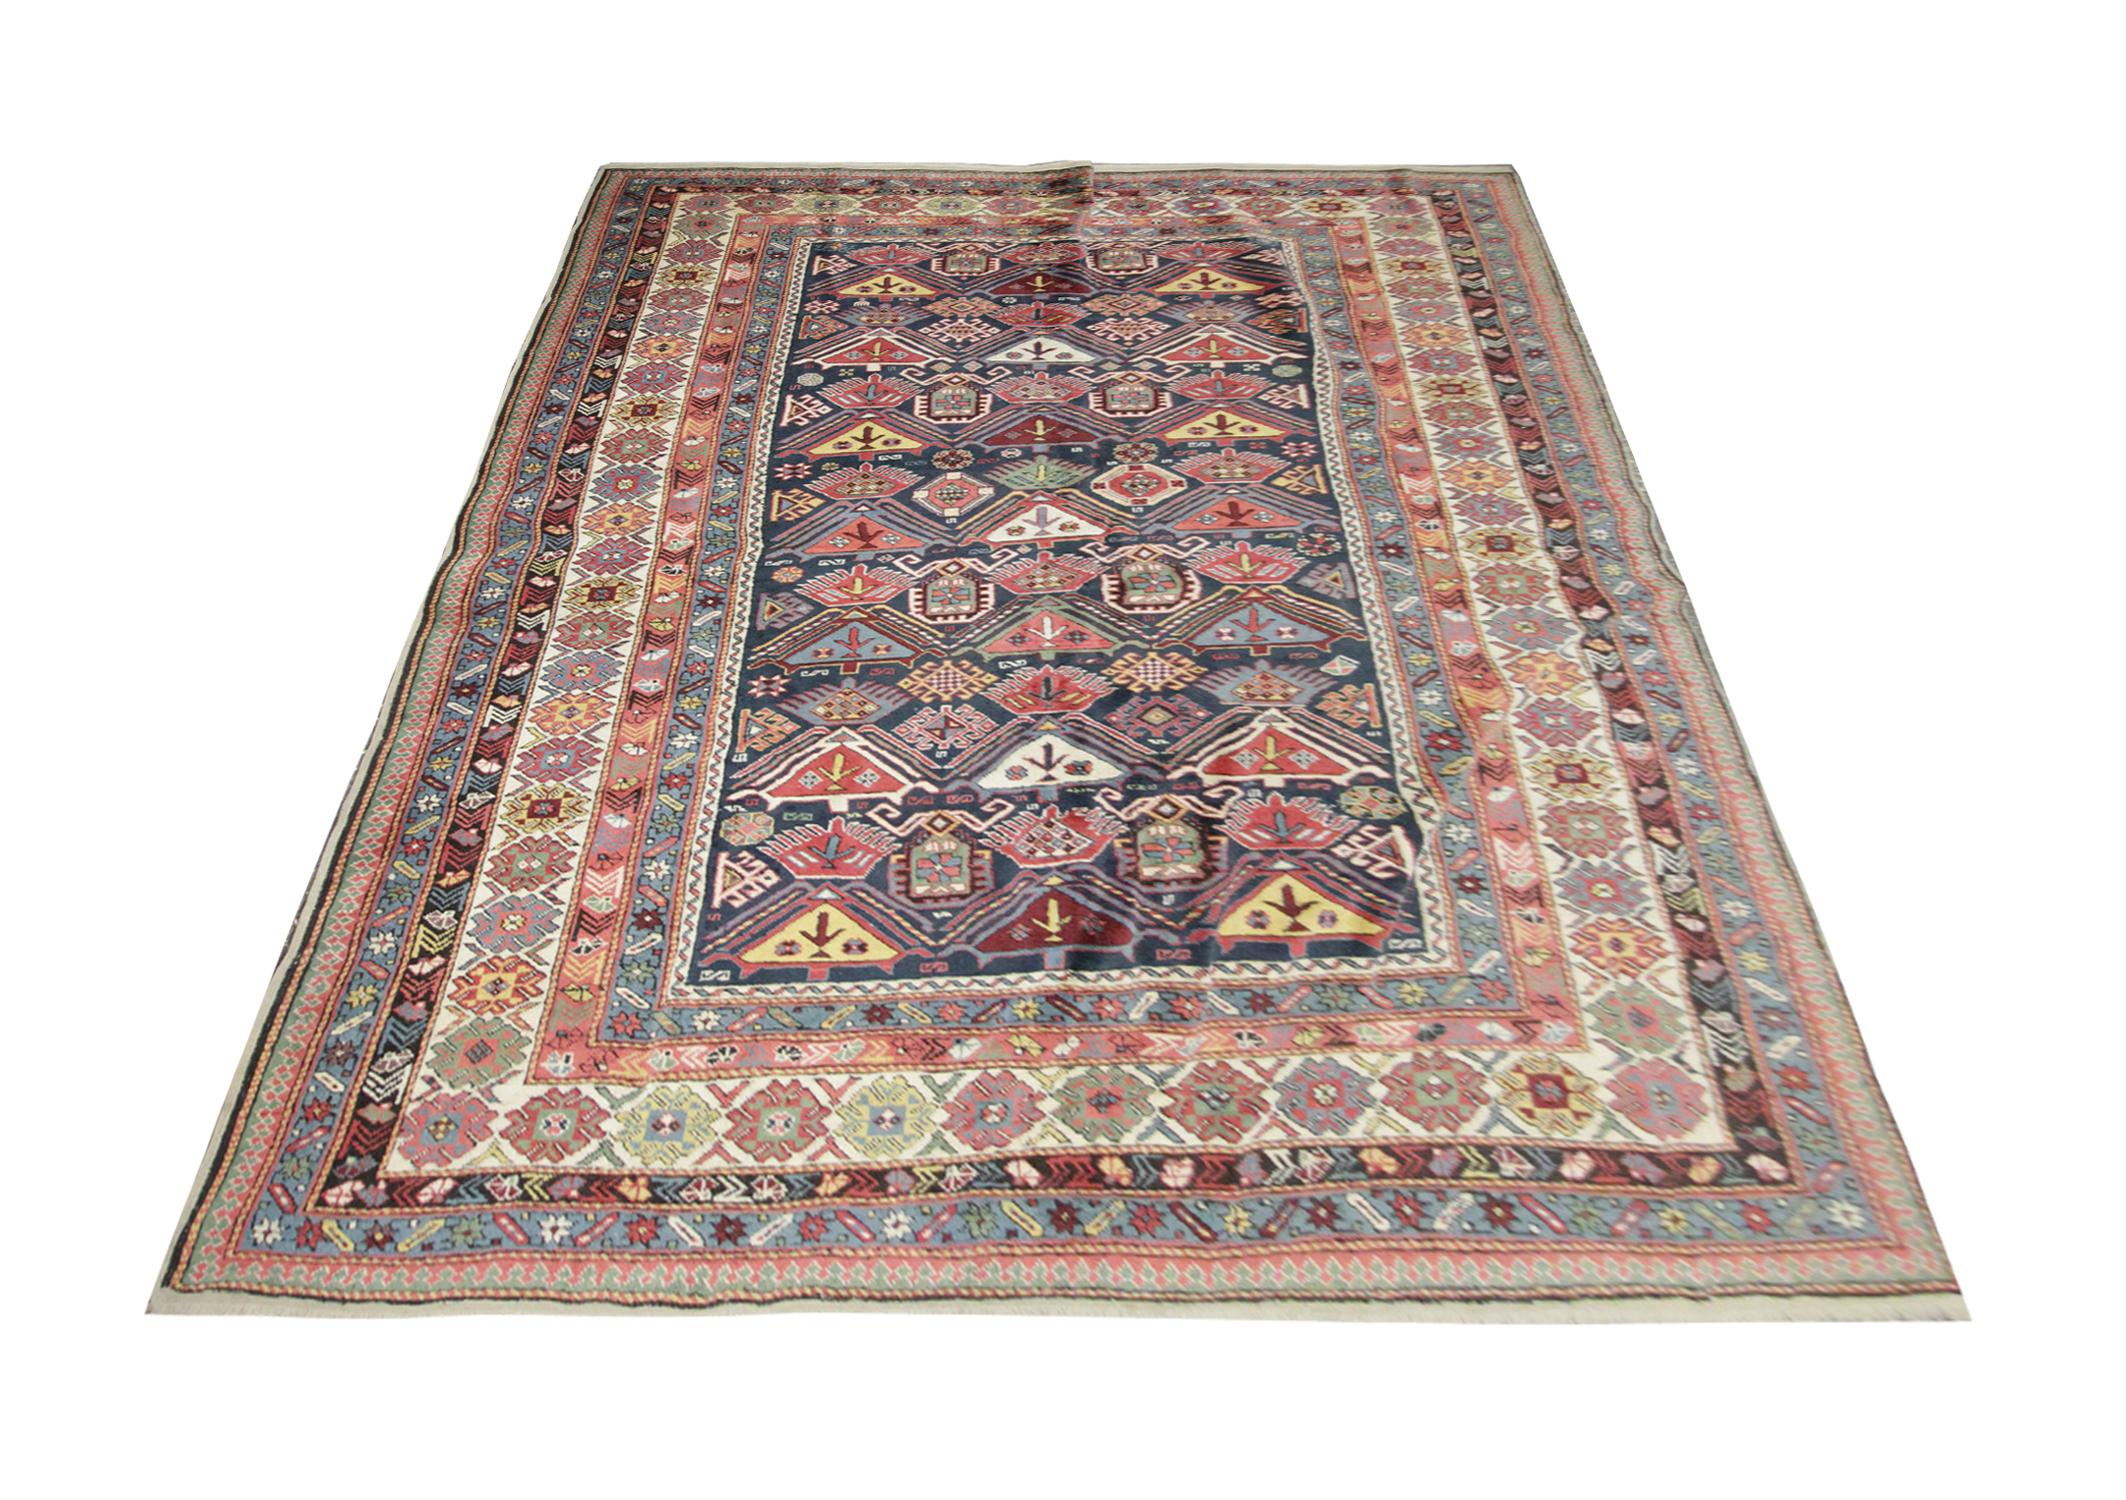 Ce tapis oriental provient de Shirvan, en Azerbaïdjan. Il a été tissé à la main avec de la laine filée à la main et teint avec des colorants végétaux 100 % biologiques. Avec une bordure à plusieurs couches et un motif symétrique, ce tapis se